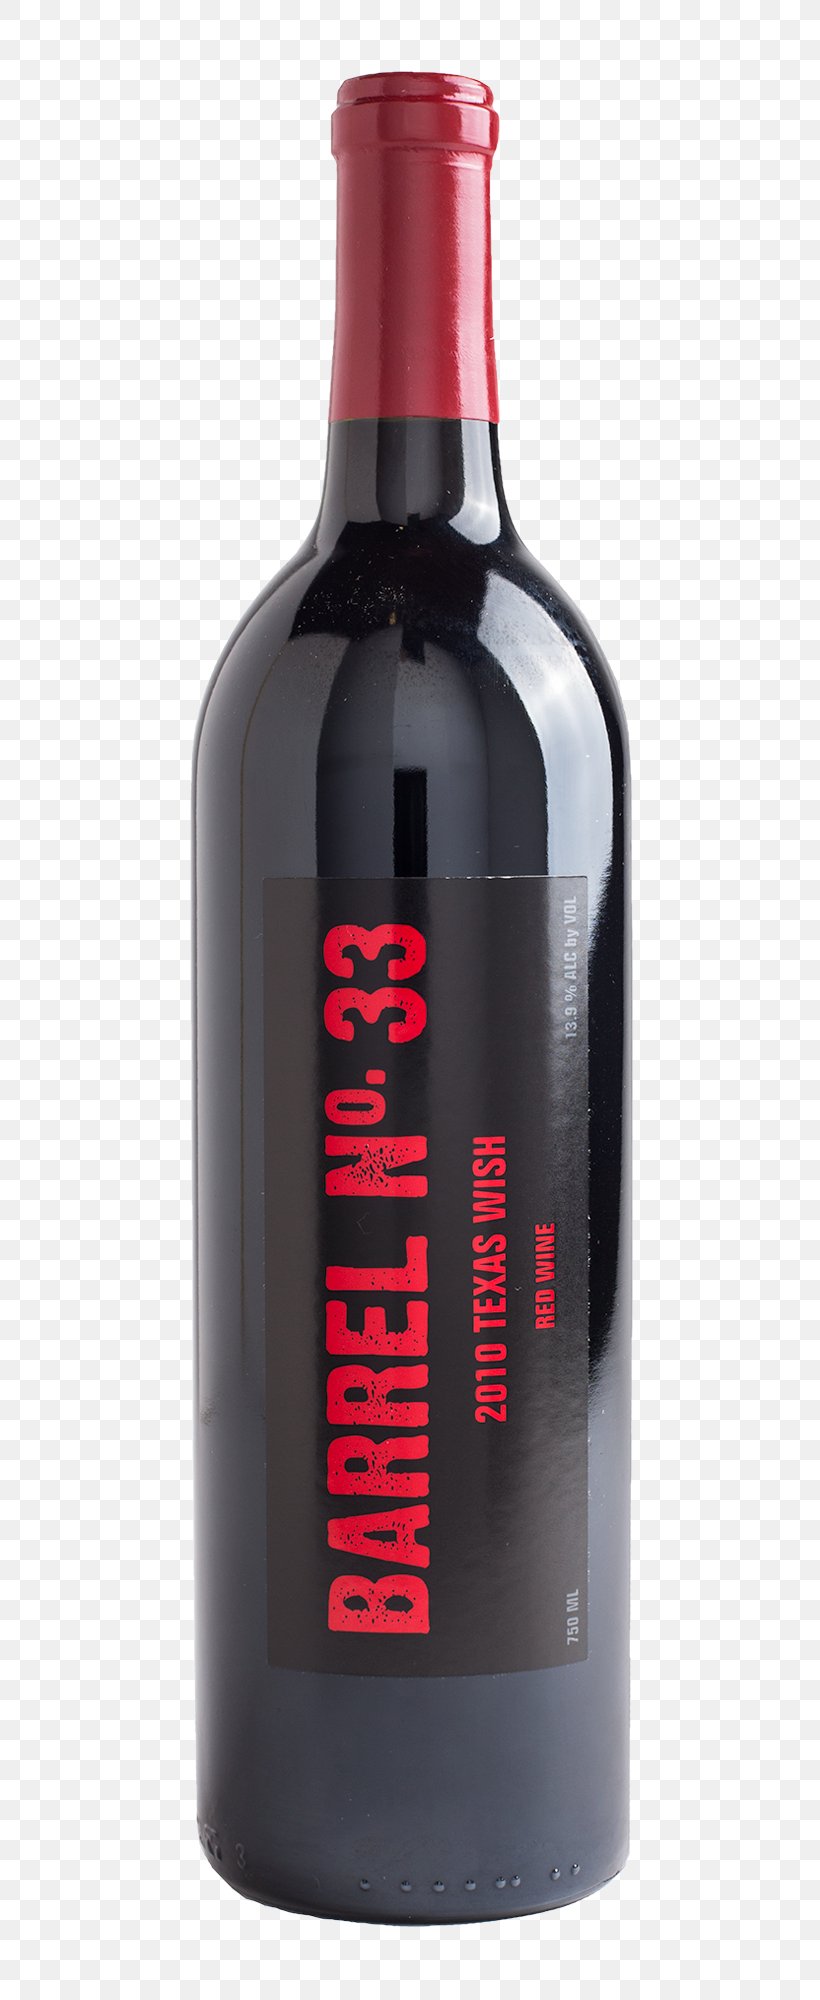 Red Wine Distilled Beverage Liqueur Bottle, PNG, 700x2000px, Wine, Alcoholic Beverage, Alcoholic Drink, Barrel, Bottle Download Free